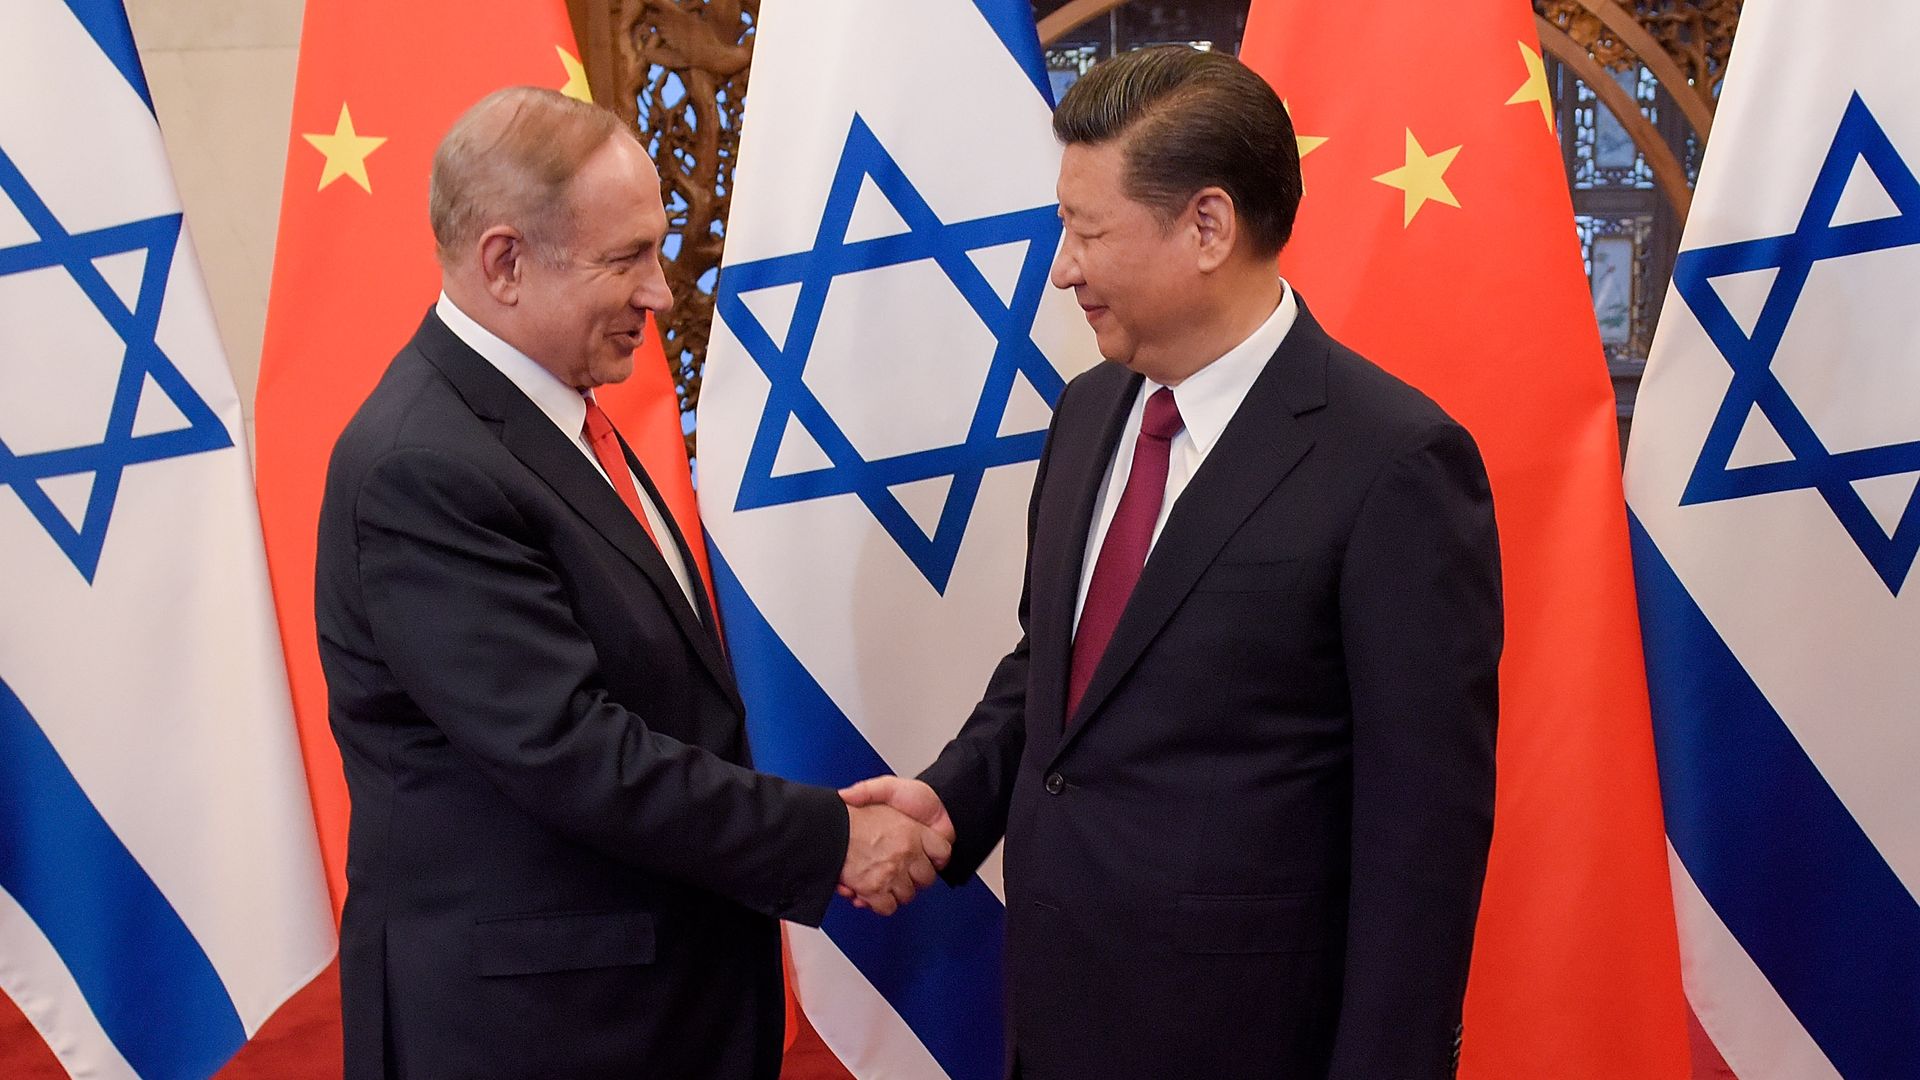 Netanyahu and Xi